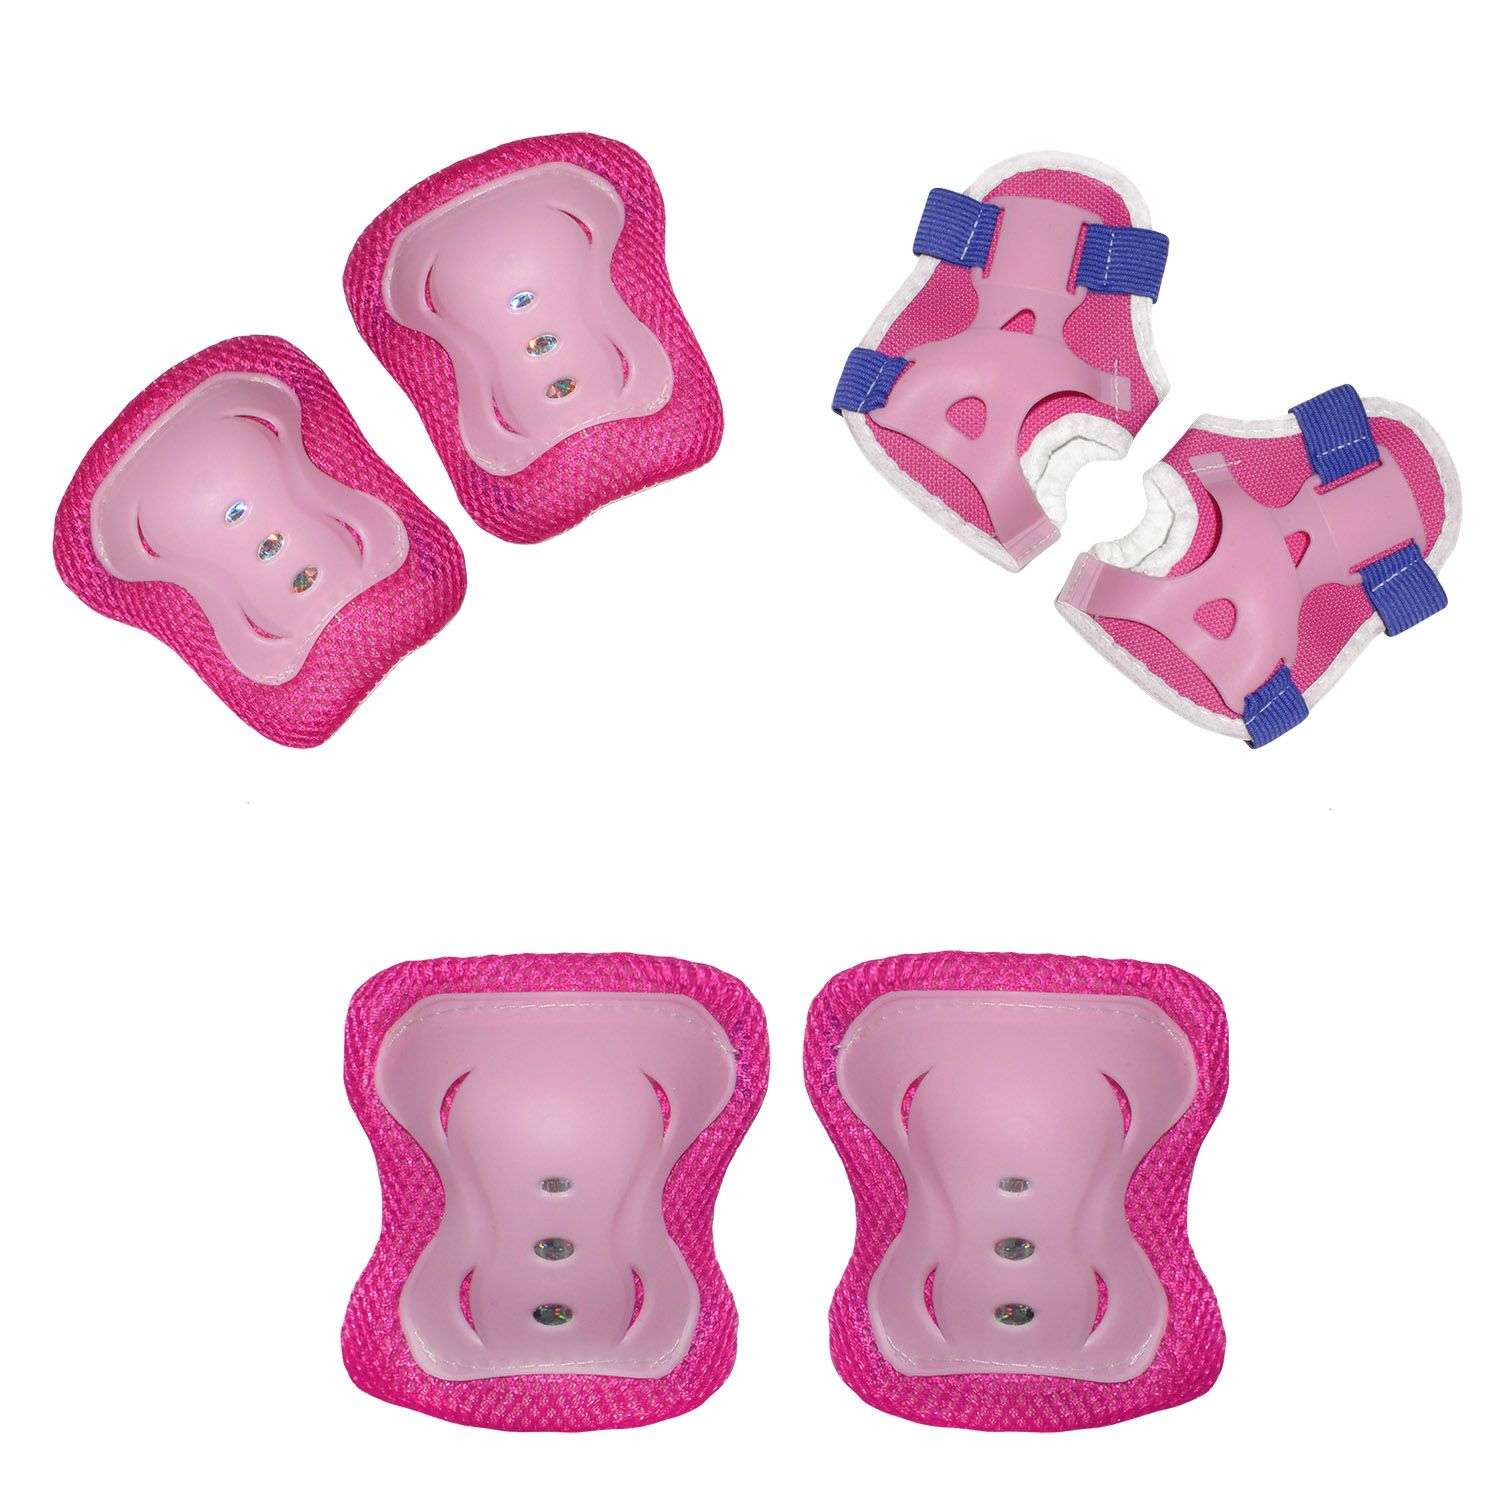 Роликовый комплект Sport Collection в сумке SET JOYFULL Pink ролики р. 29-32 Шлем 50-56 Защита S/M - фото 6